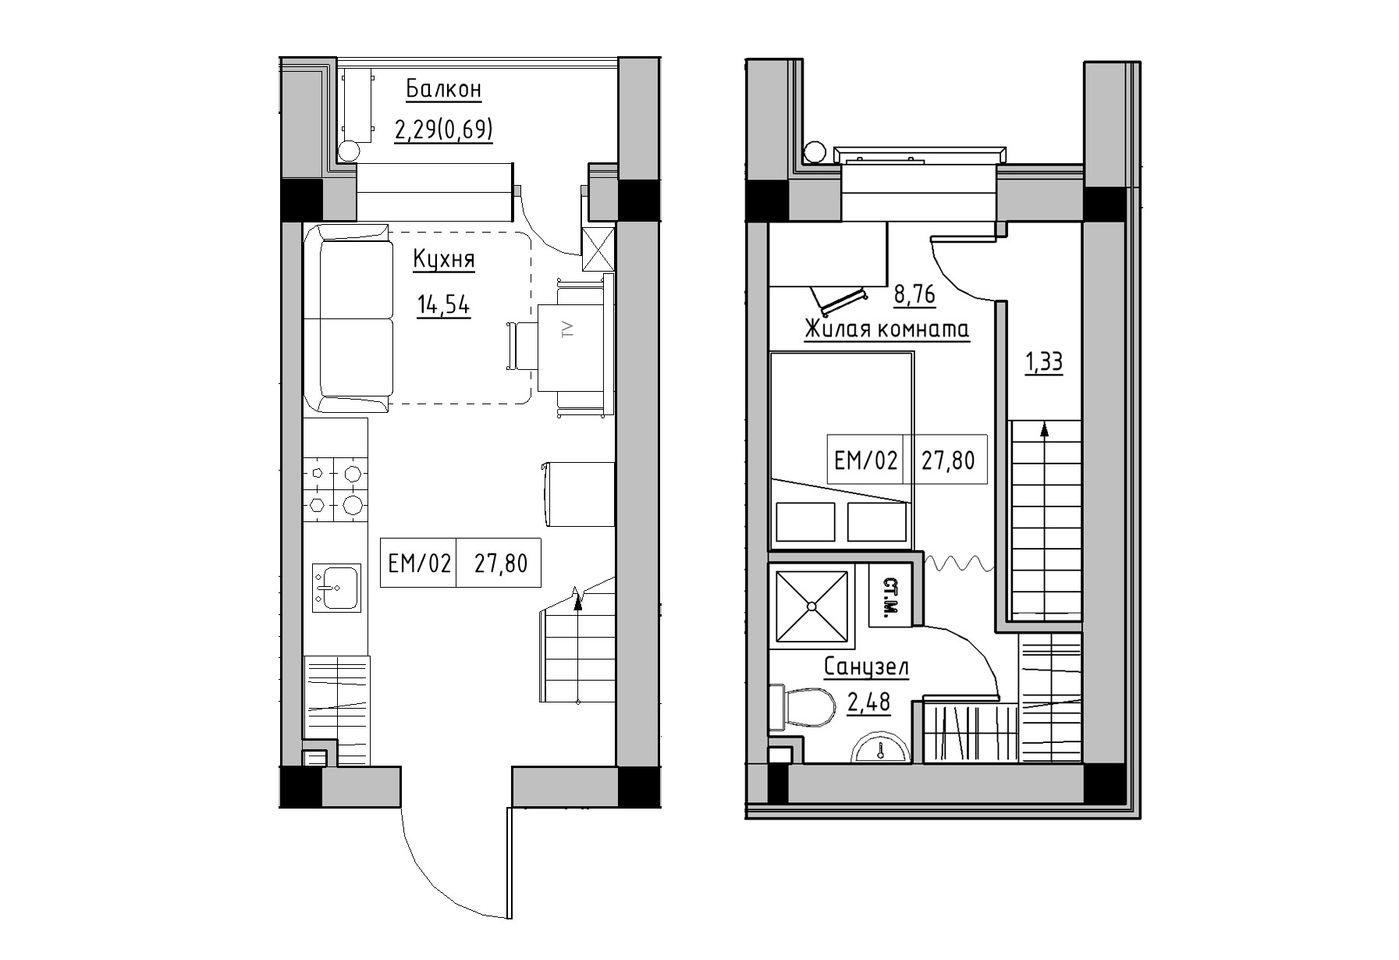 Planning 2-lvl flats area 27.8m2, KS-014-05/0010.